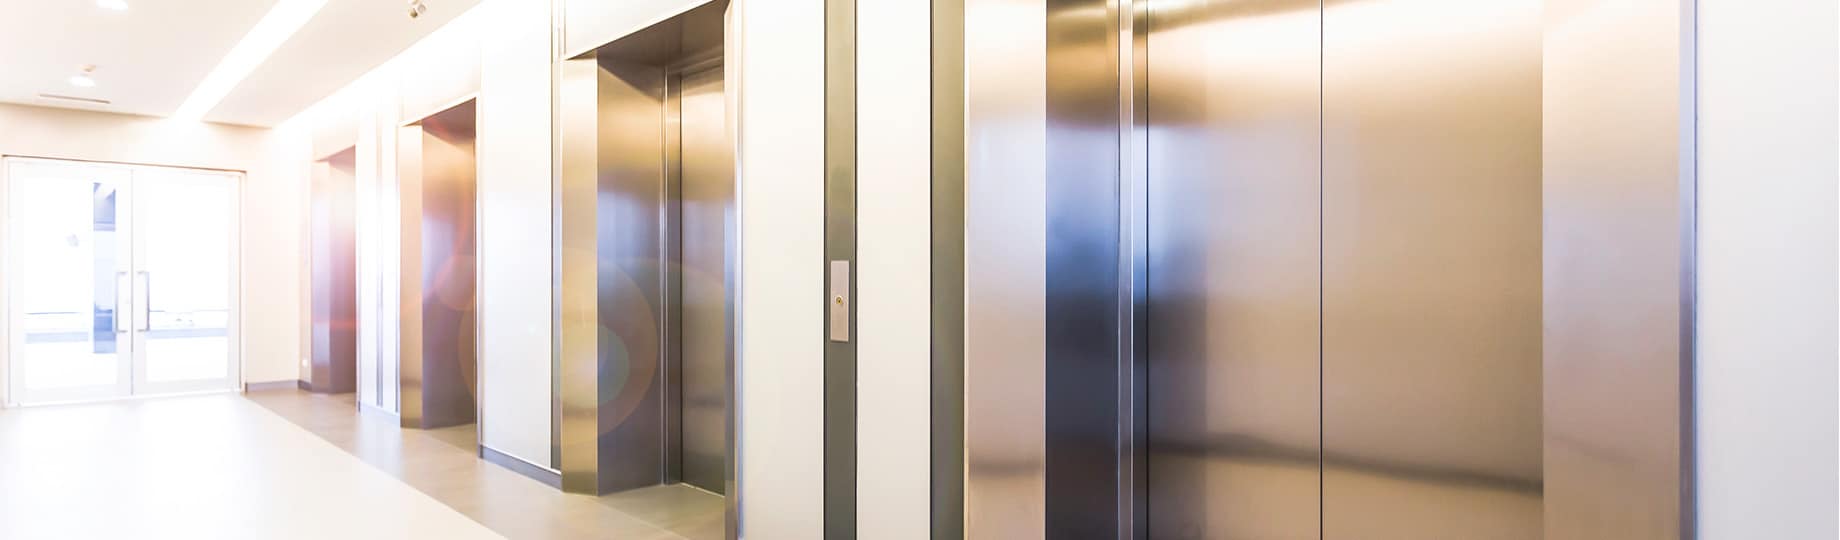 tipos de elevadores